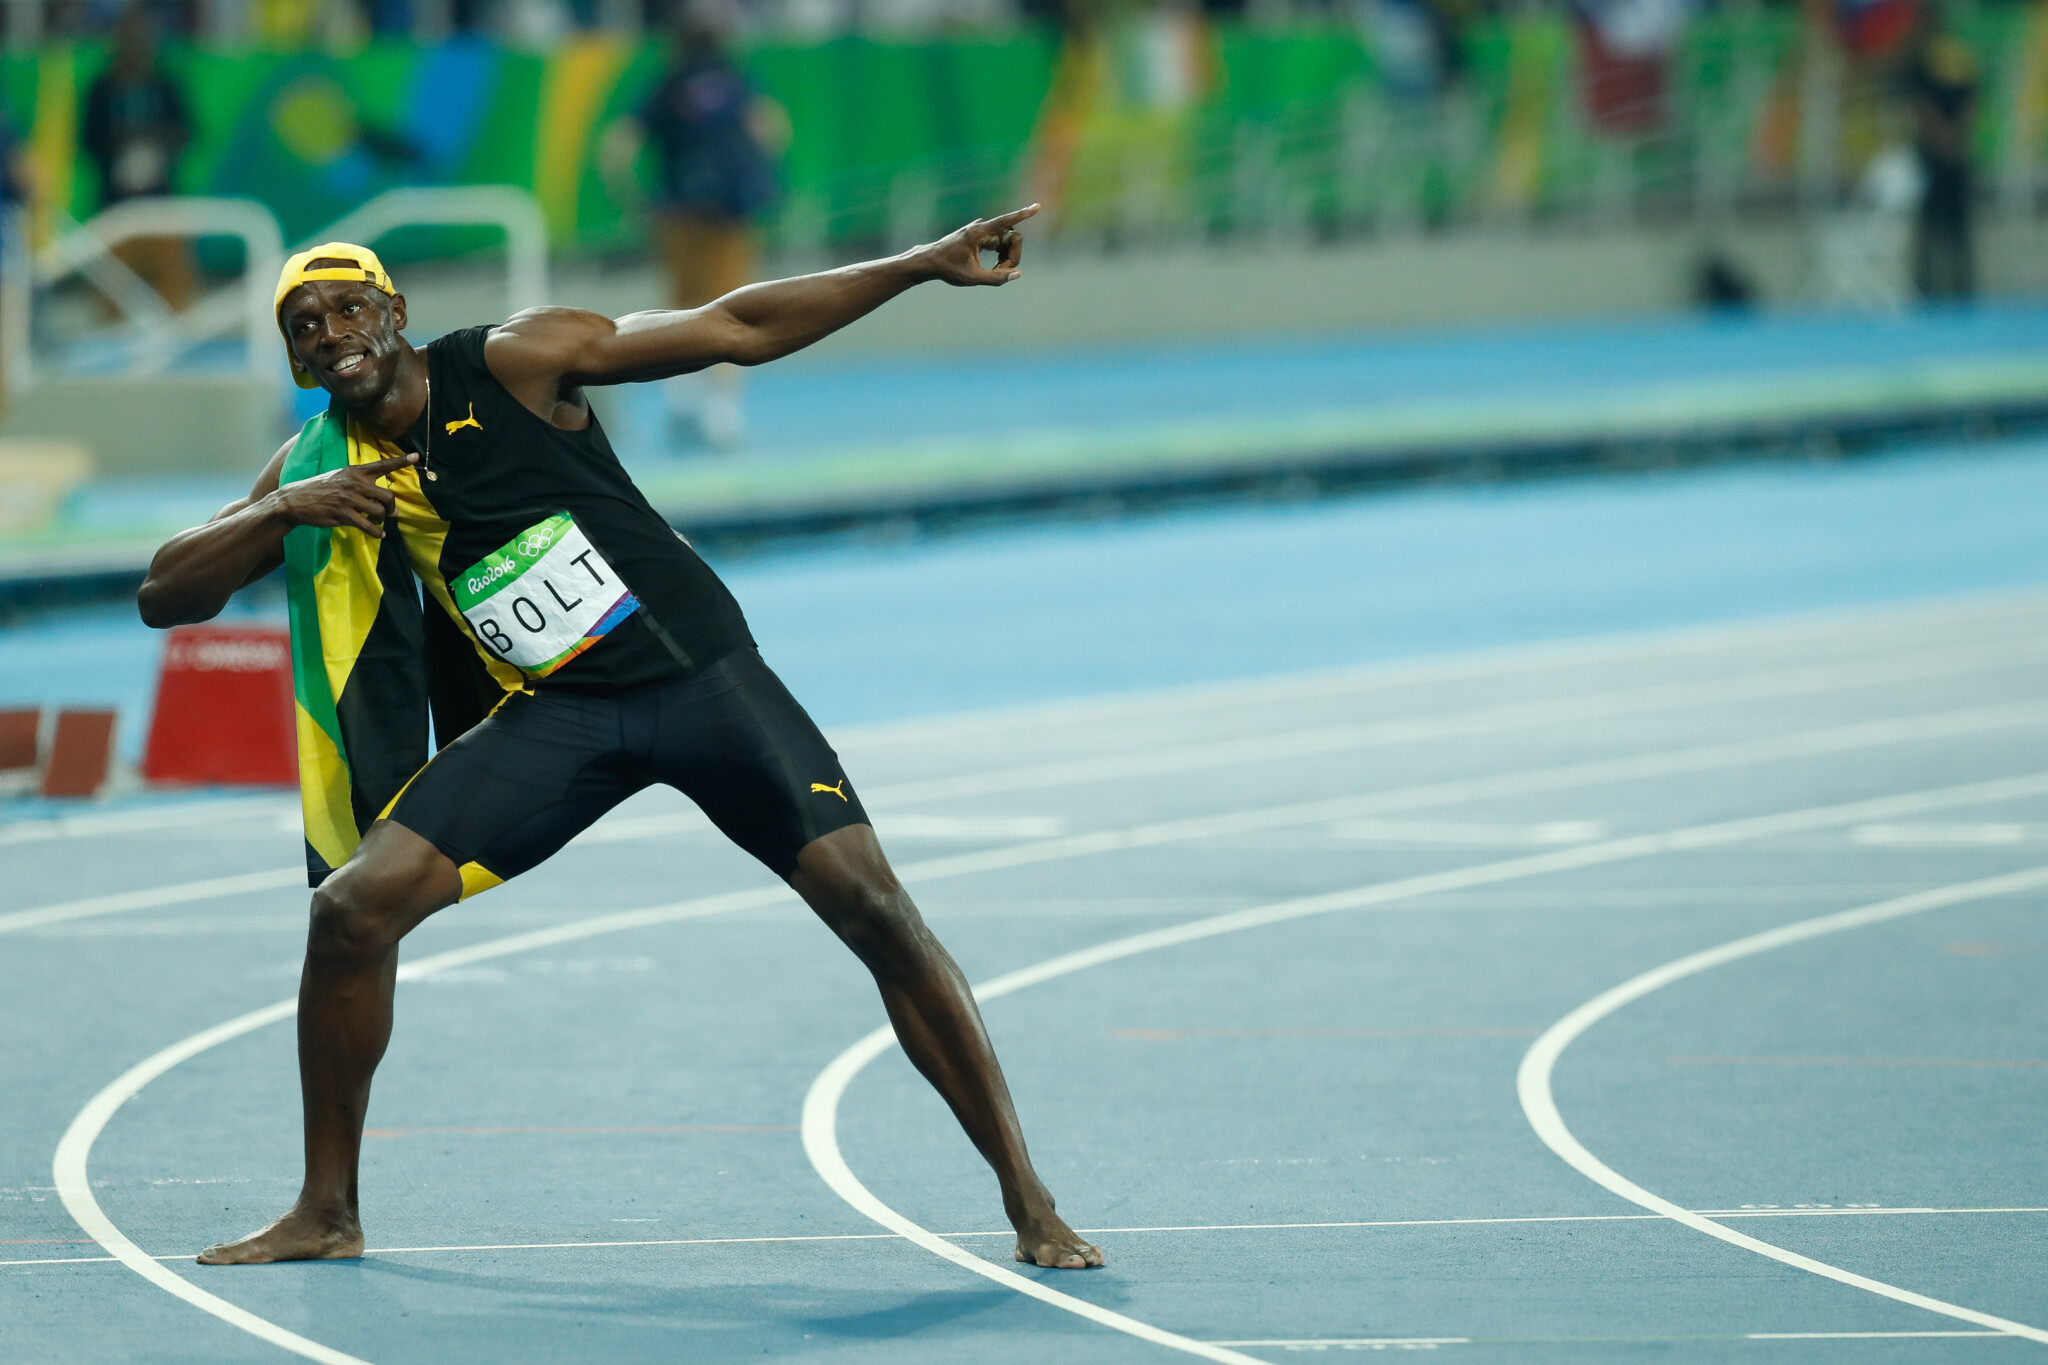 Boltovo vítězné gesto na tričku. Sprinter požádal o ochrannou obchodní známku